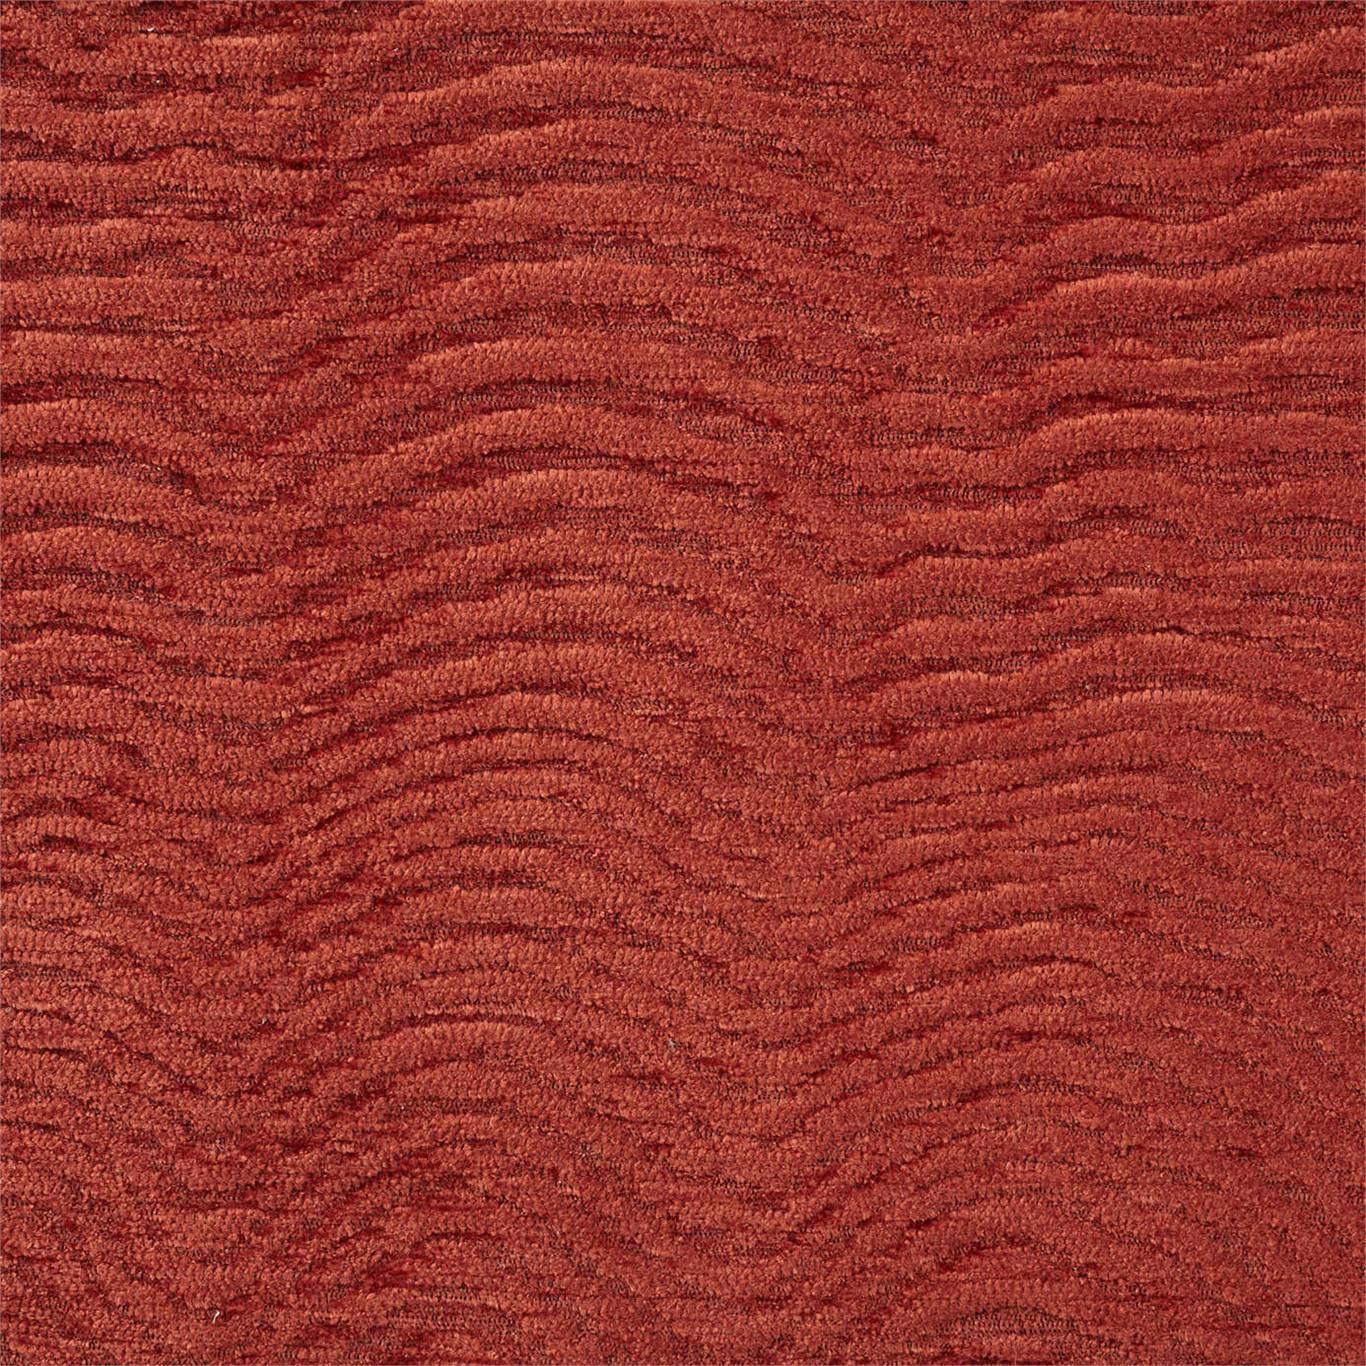 Waltz Terracotta Fabric by HAR